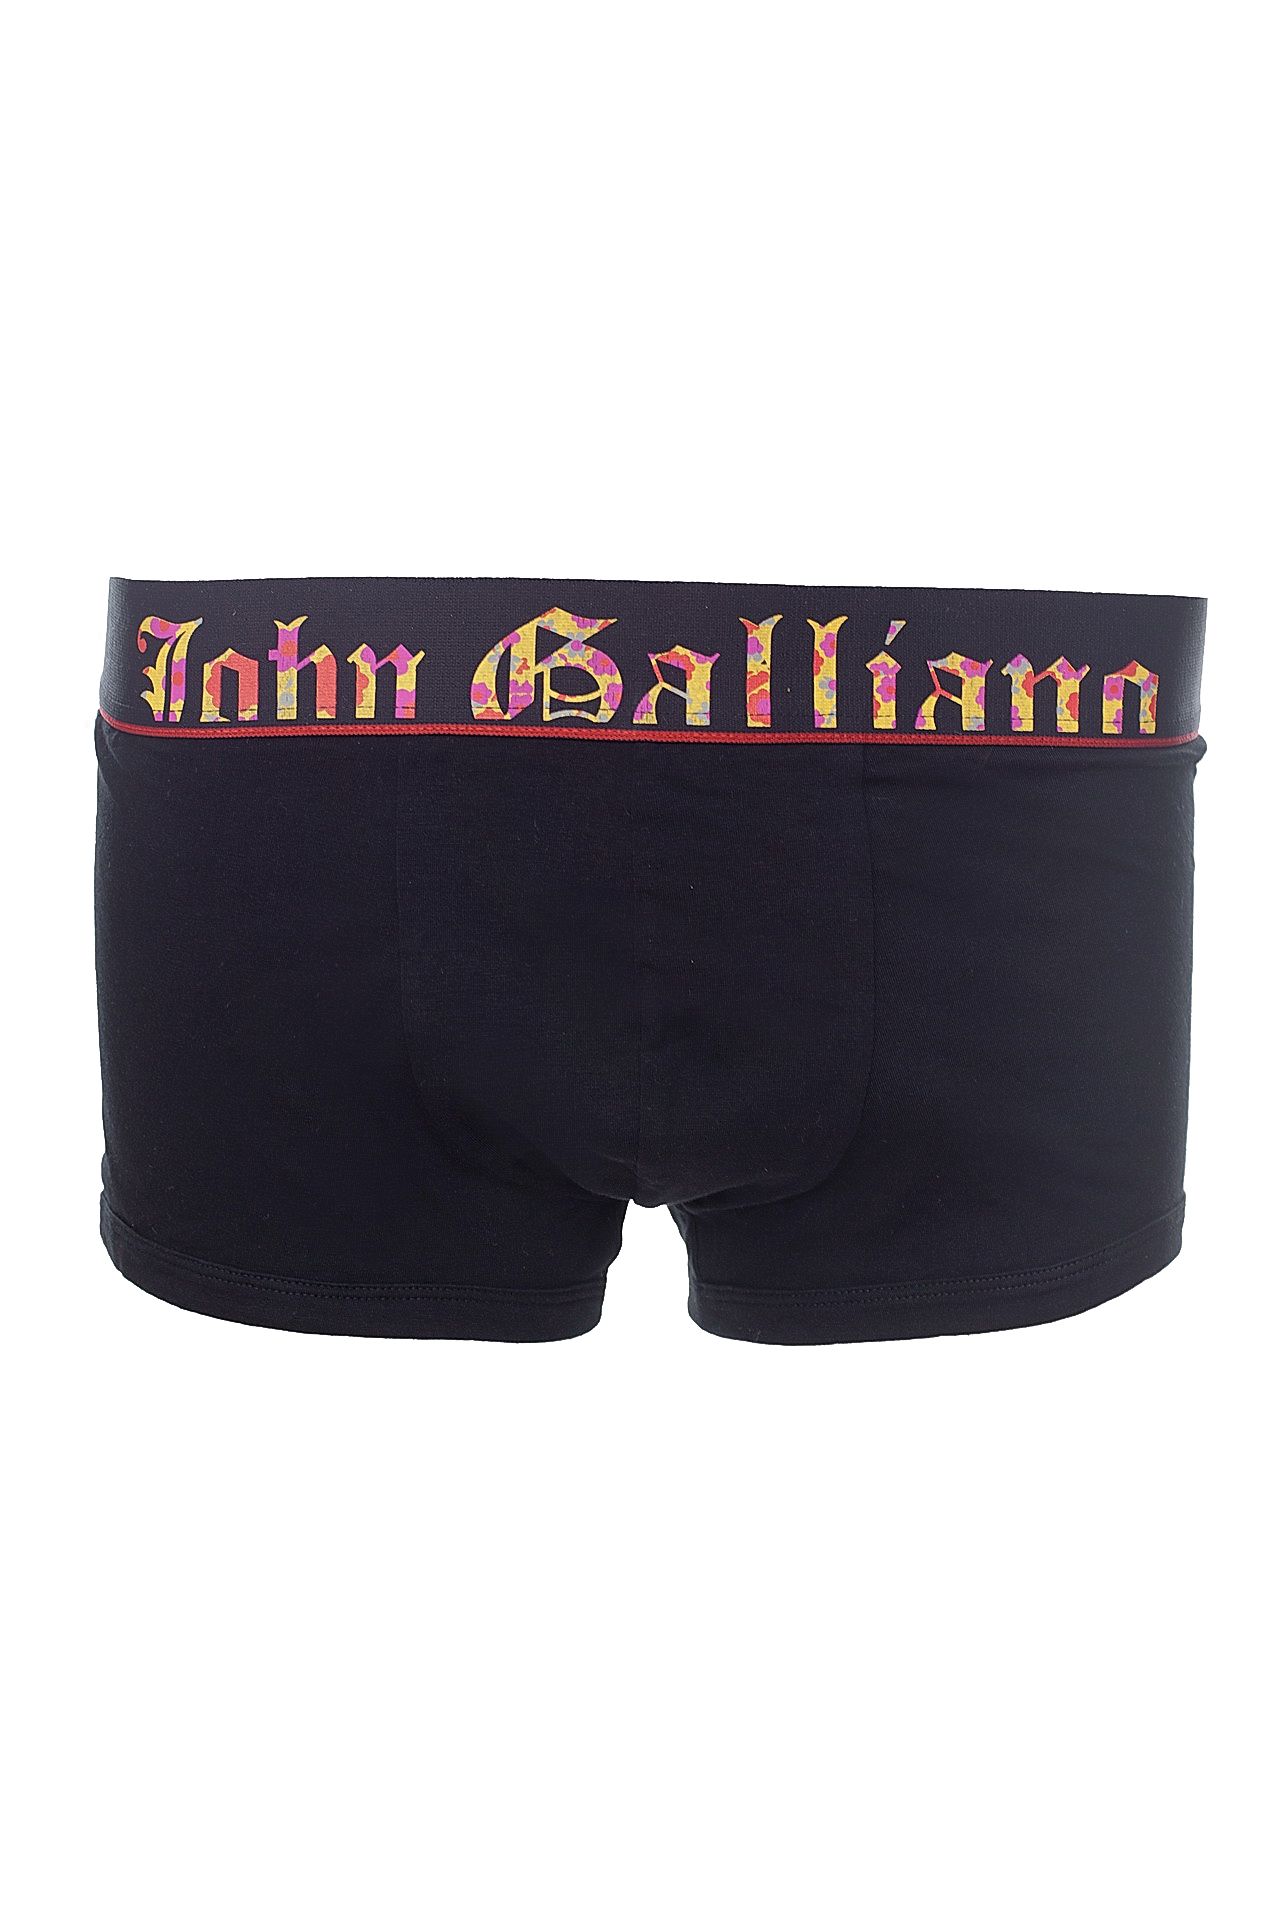 Одежда мужская Трусы JOHN GALLIANO (L11H043/19). Купить за 4130 руб.